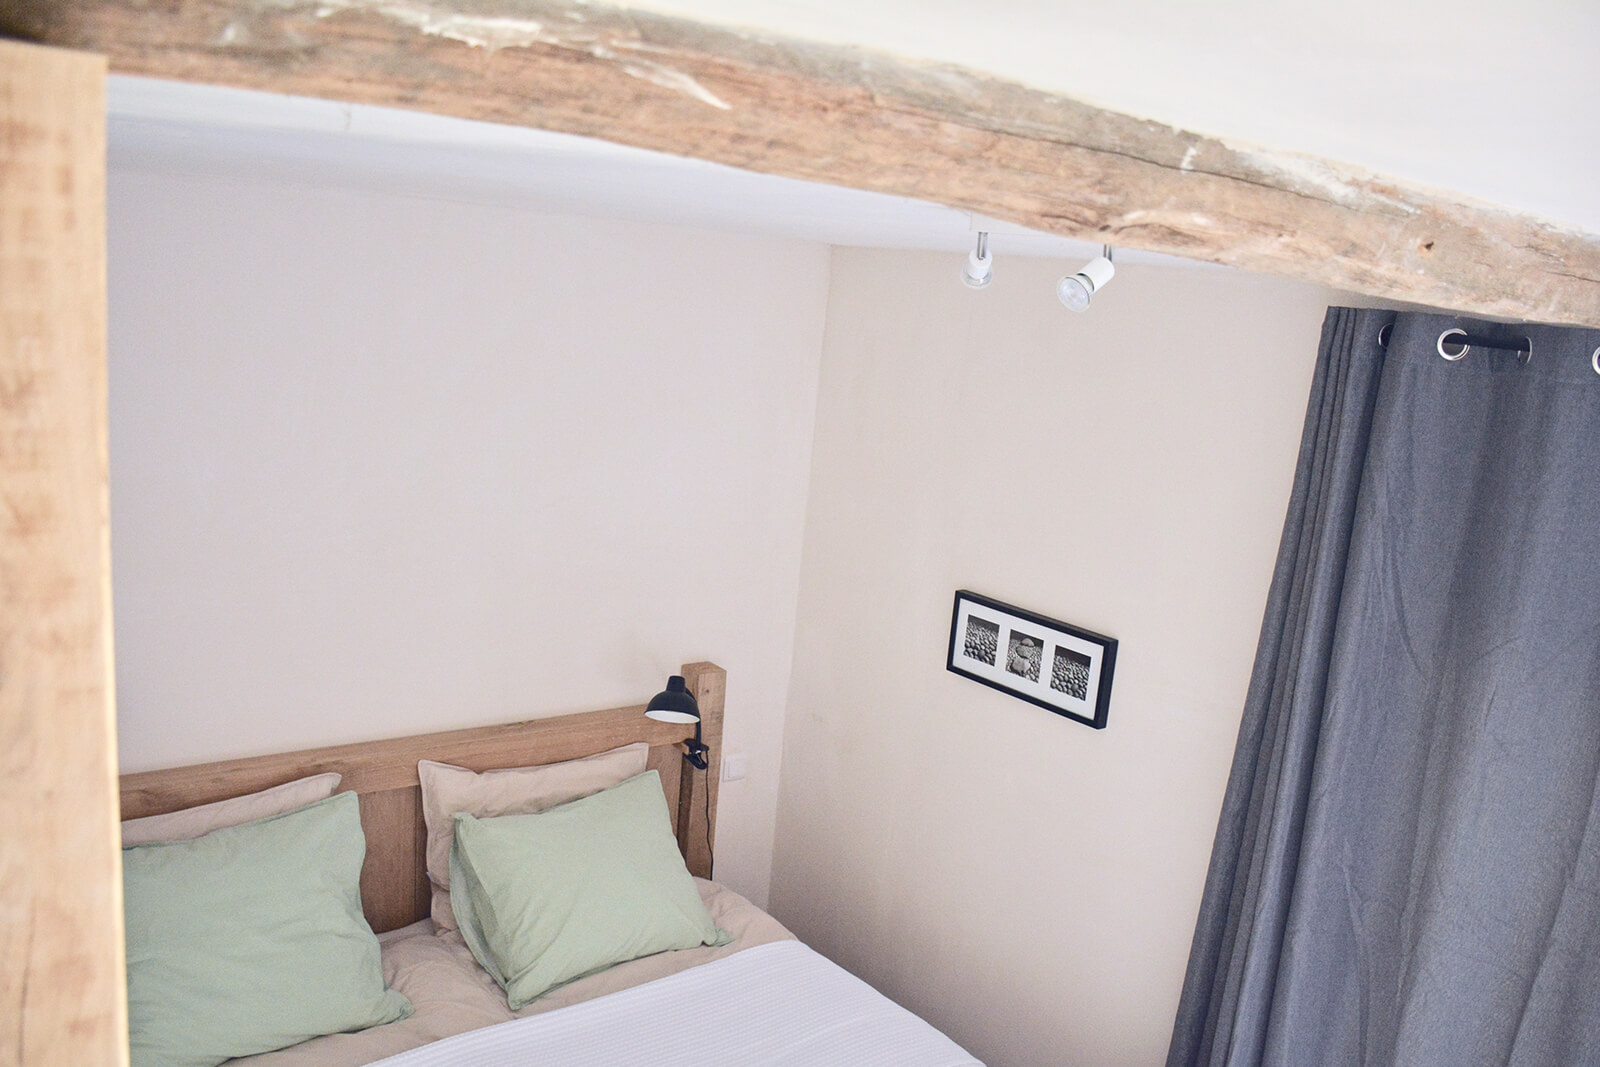 Slaapkamer vakantiehuis LOTT Duravel oude eiken balken